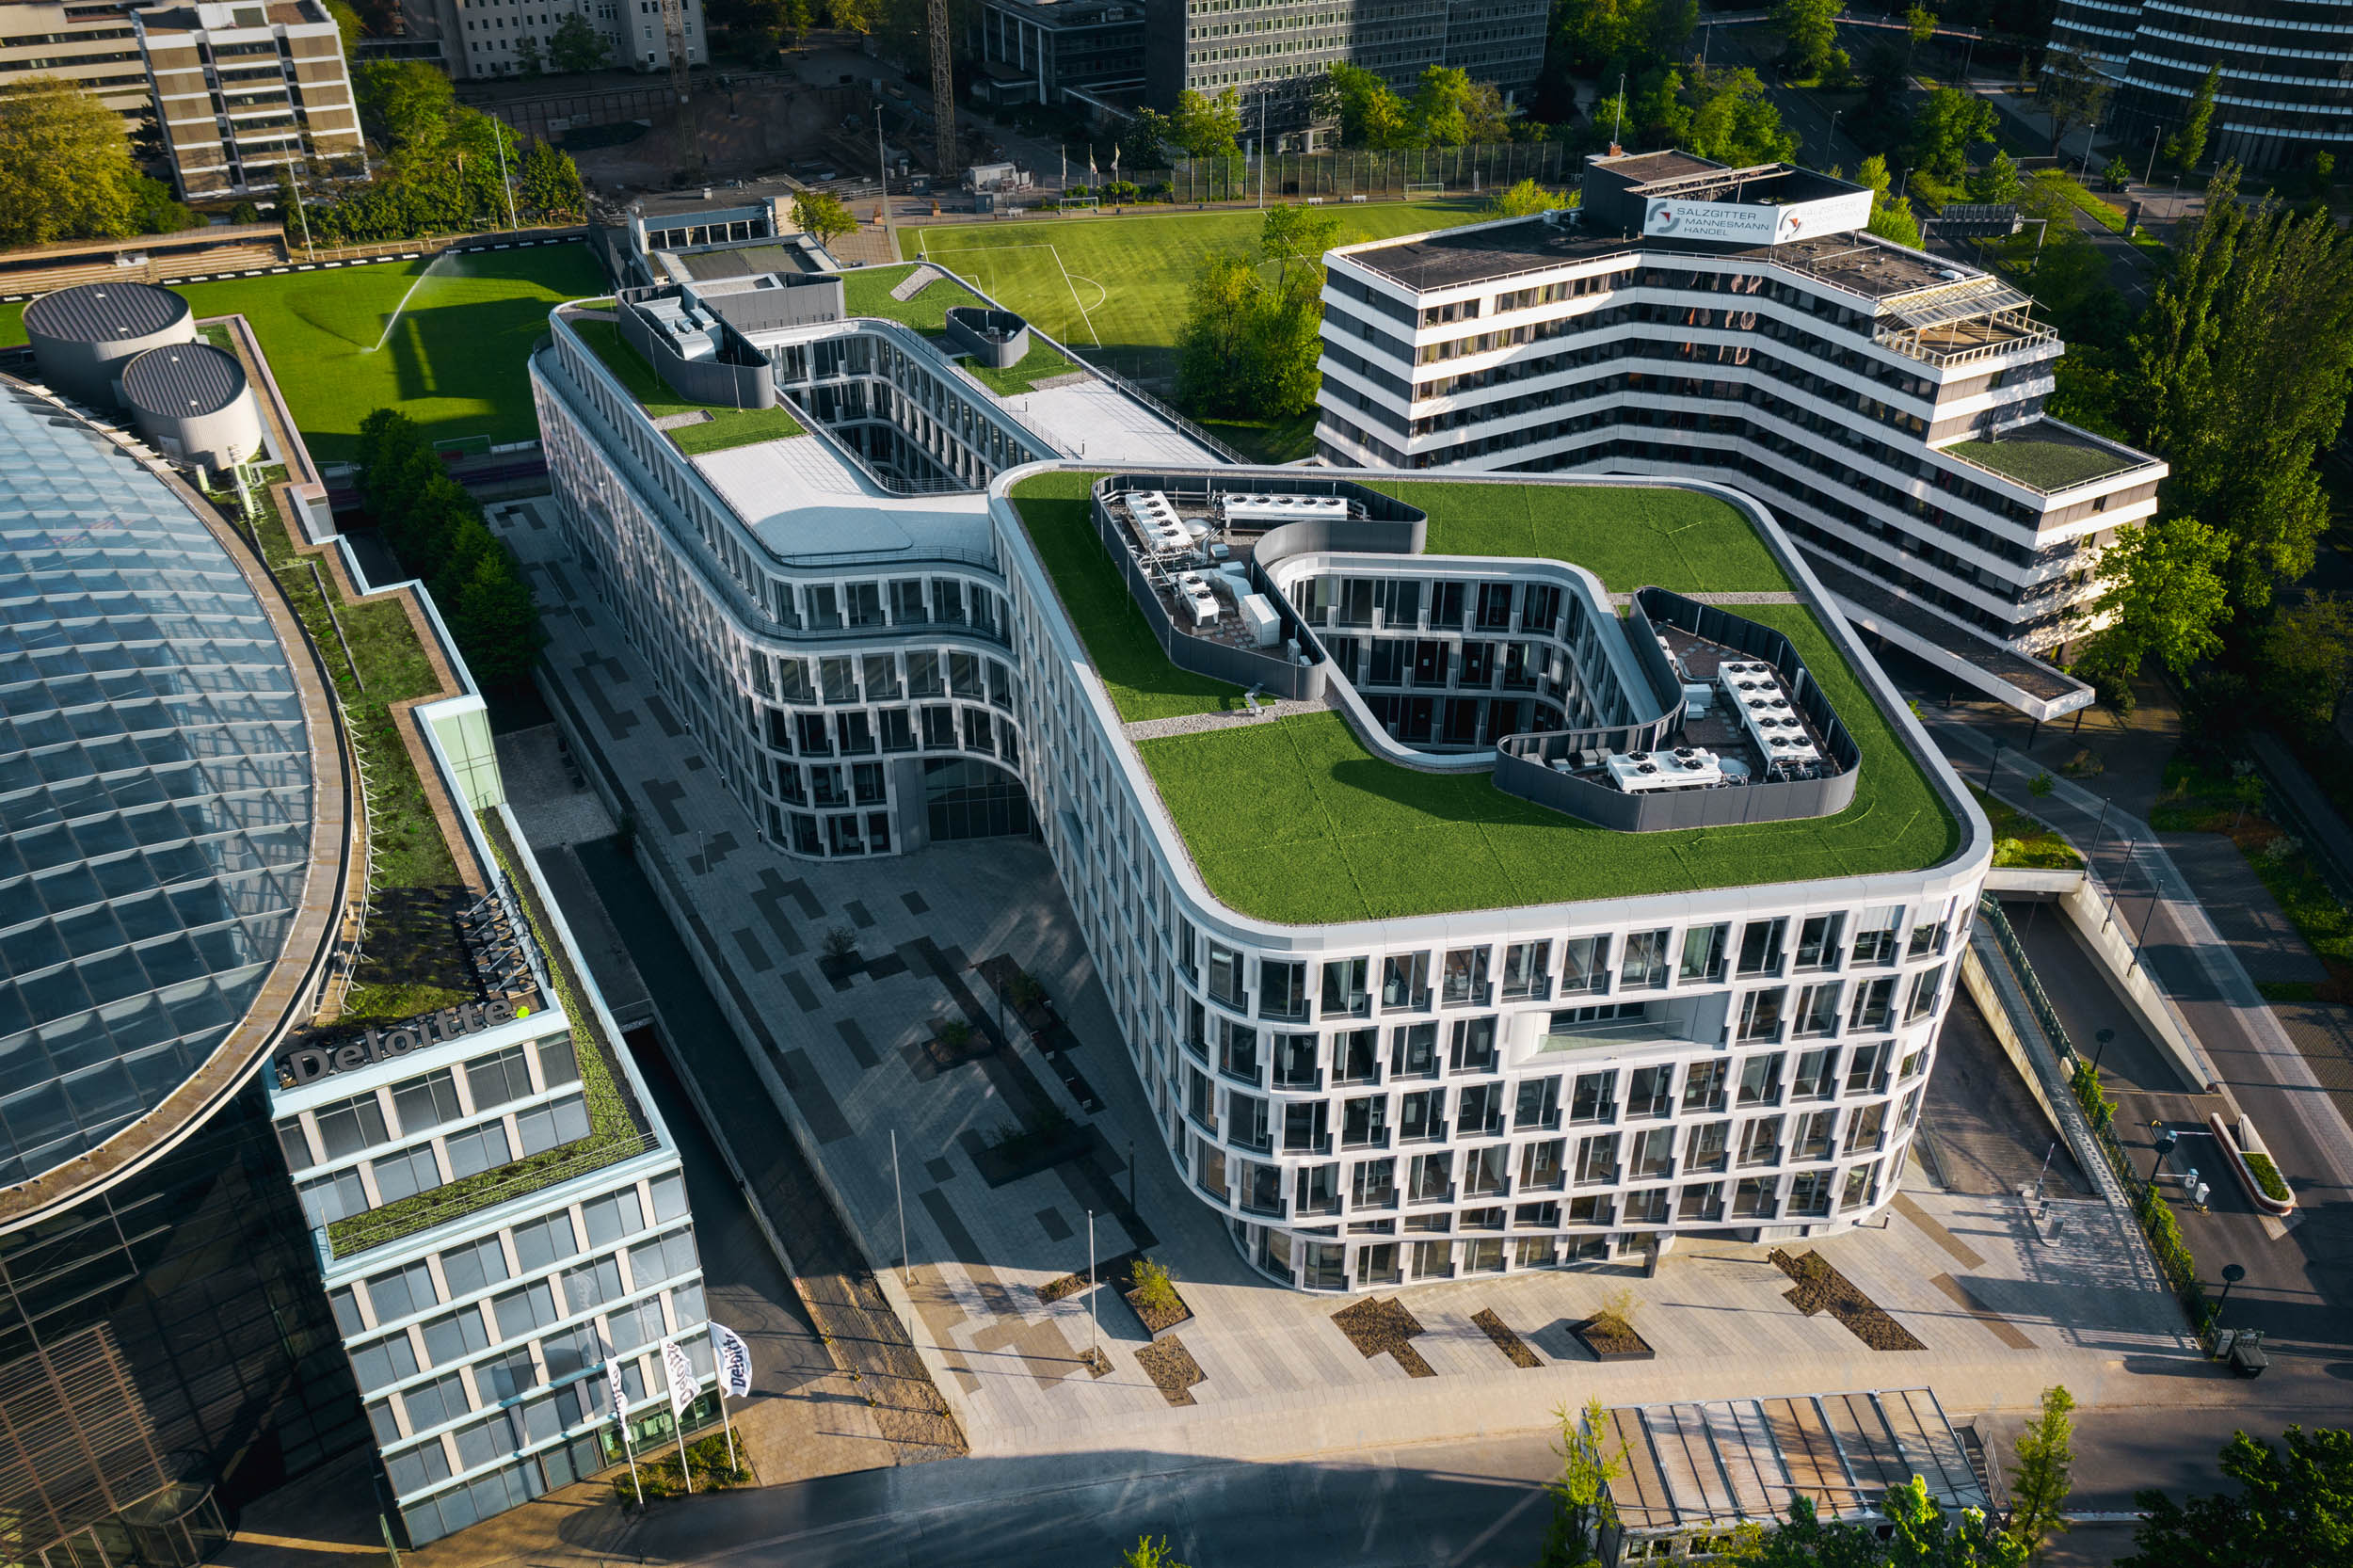 Gustav-Epple-Bauunternehmung-Infinity-Düsseldoef-Schwannstrasse-Architektur-Büro_DJI_0696